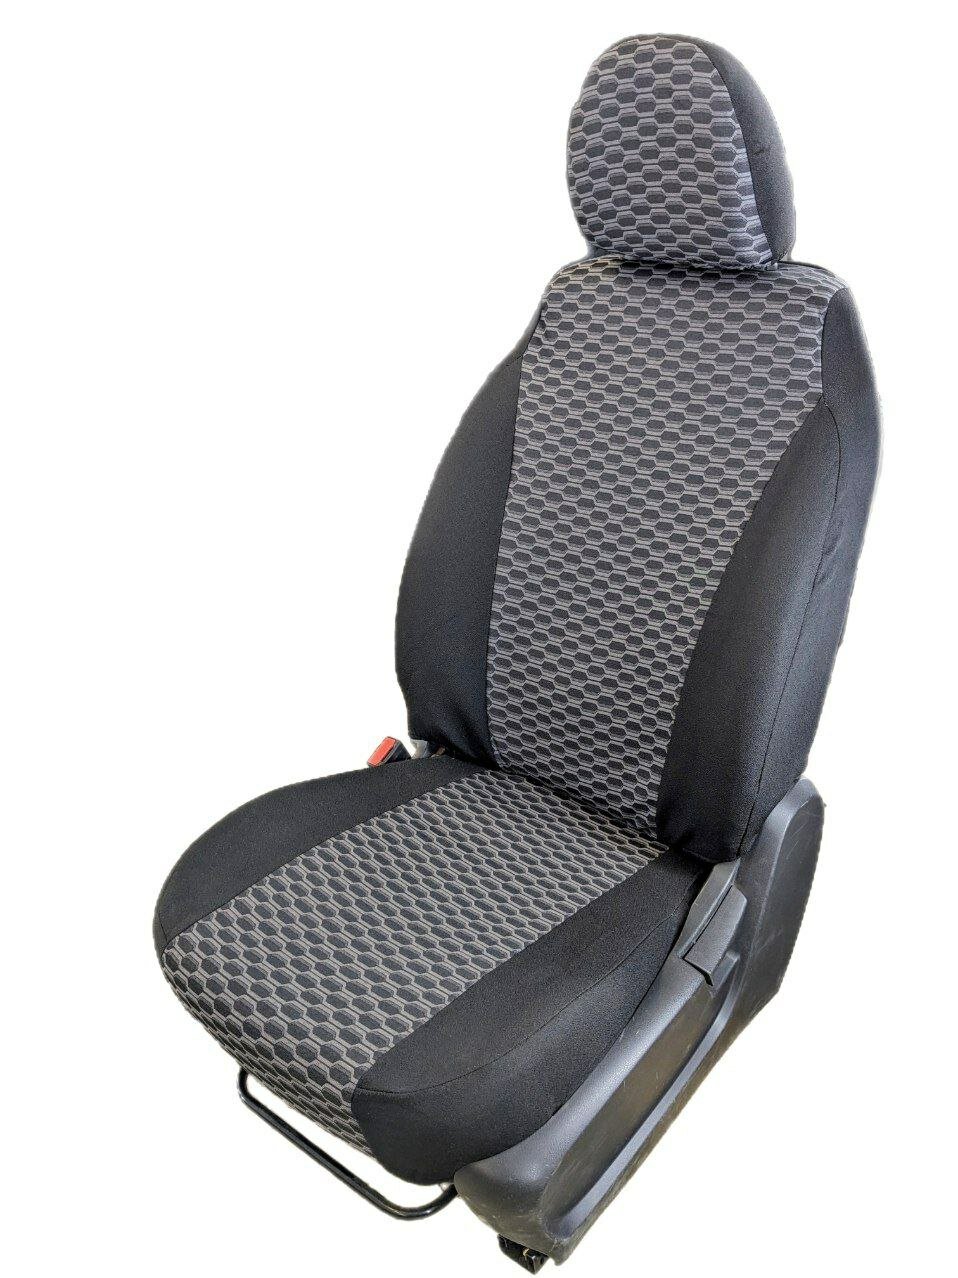 Чехлы модельные Н. М. на автомобильные сиденья Lada 2110/Приора седан 2007-2013. Жаккард черно-серый.